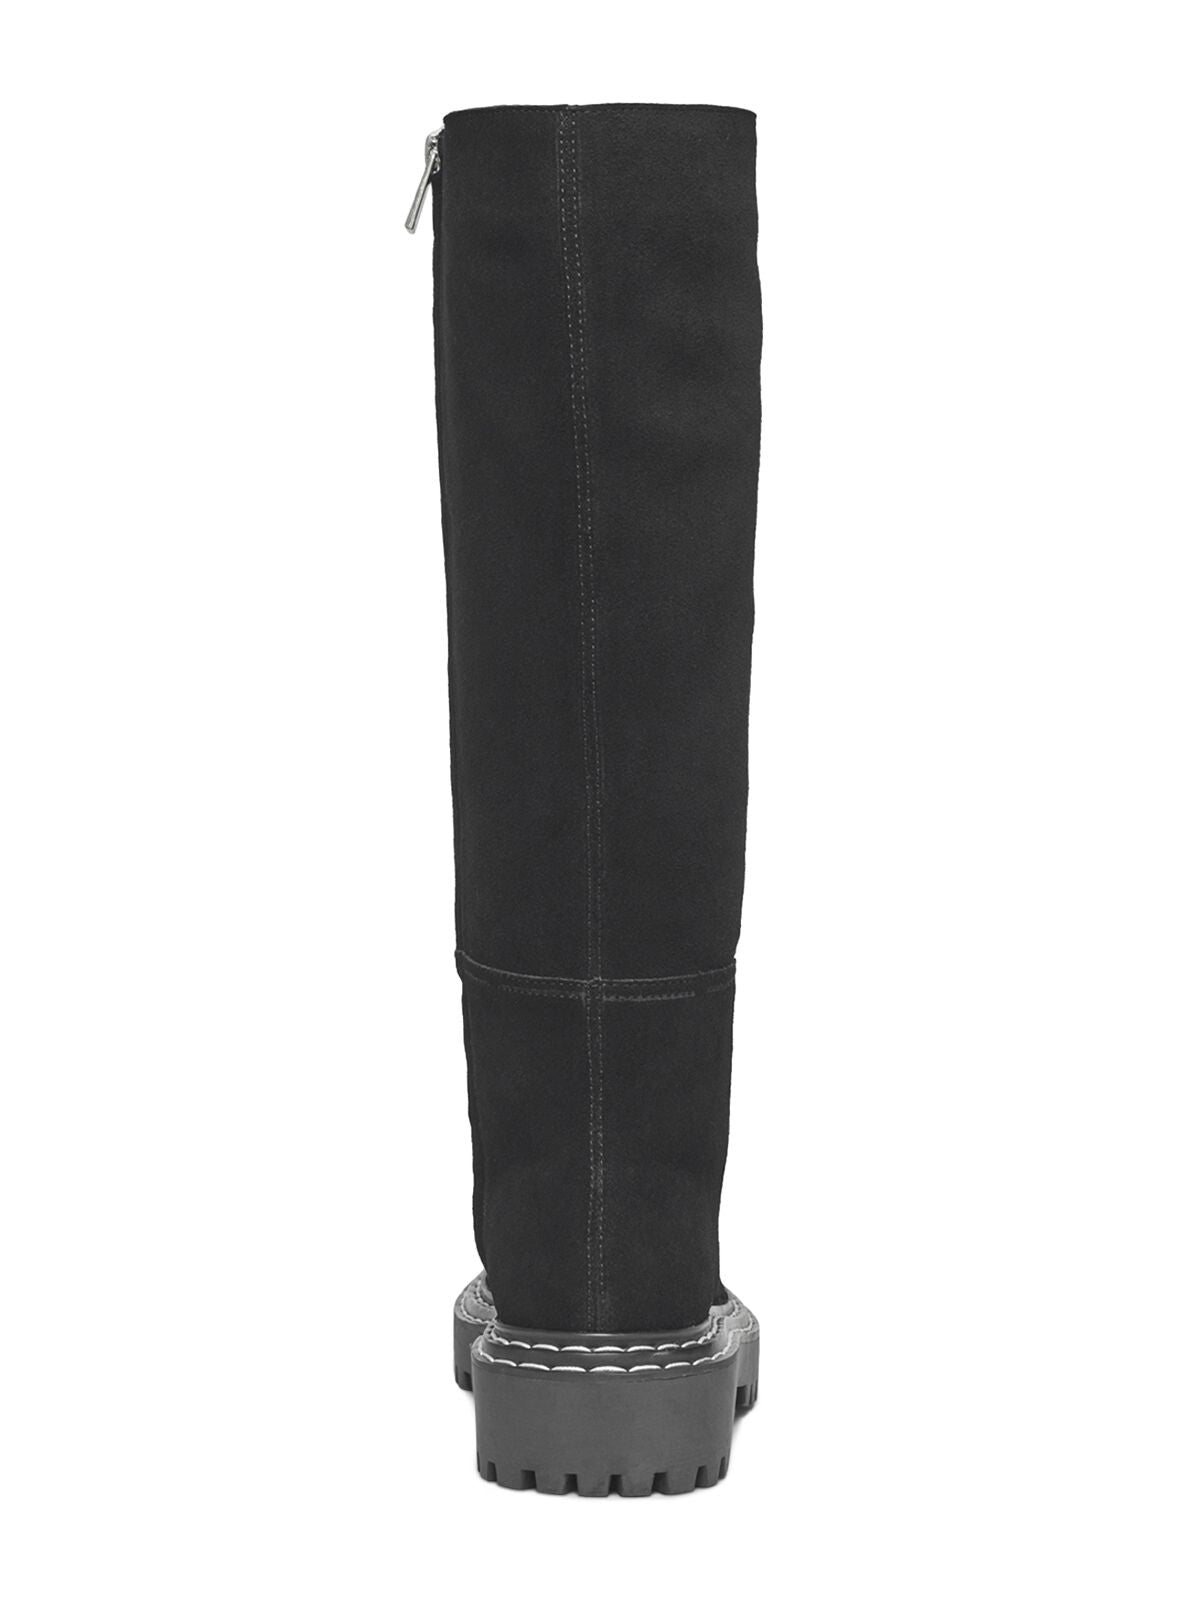 SPLENDID Womens Black Comfort Lug Sole Amalia Round Toe Block Heel Zip-Up Leather Heeled Boots 8